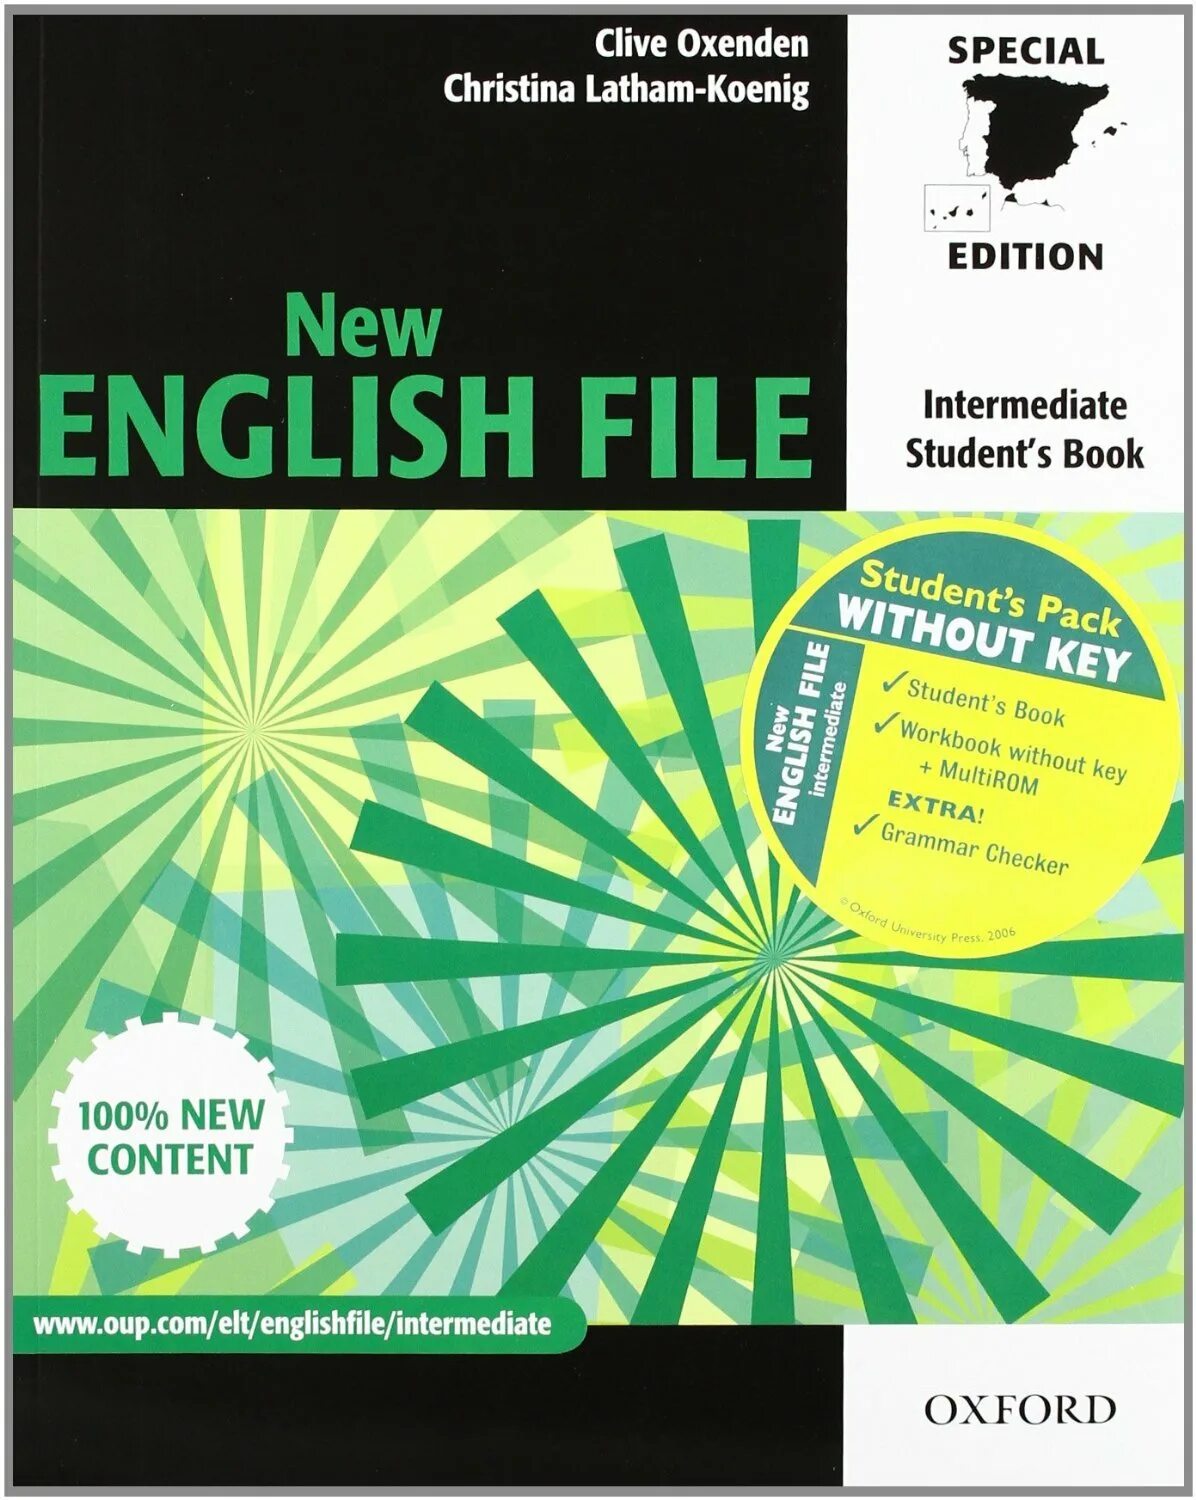 New English file Intermediate диски. New English file 100% New Oxford Upper-Intermediate. English file 4th Edition уровни. New English file Intermediate. Student's book. Clive Oxenden, Christina Latham-Koenig [Oxford] (+Audio) (2006).